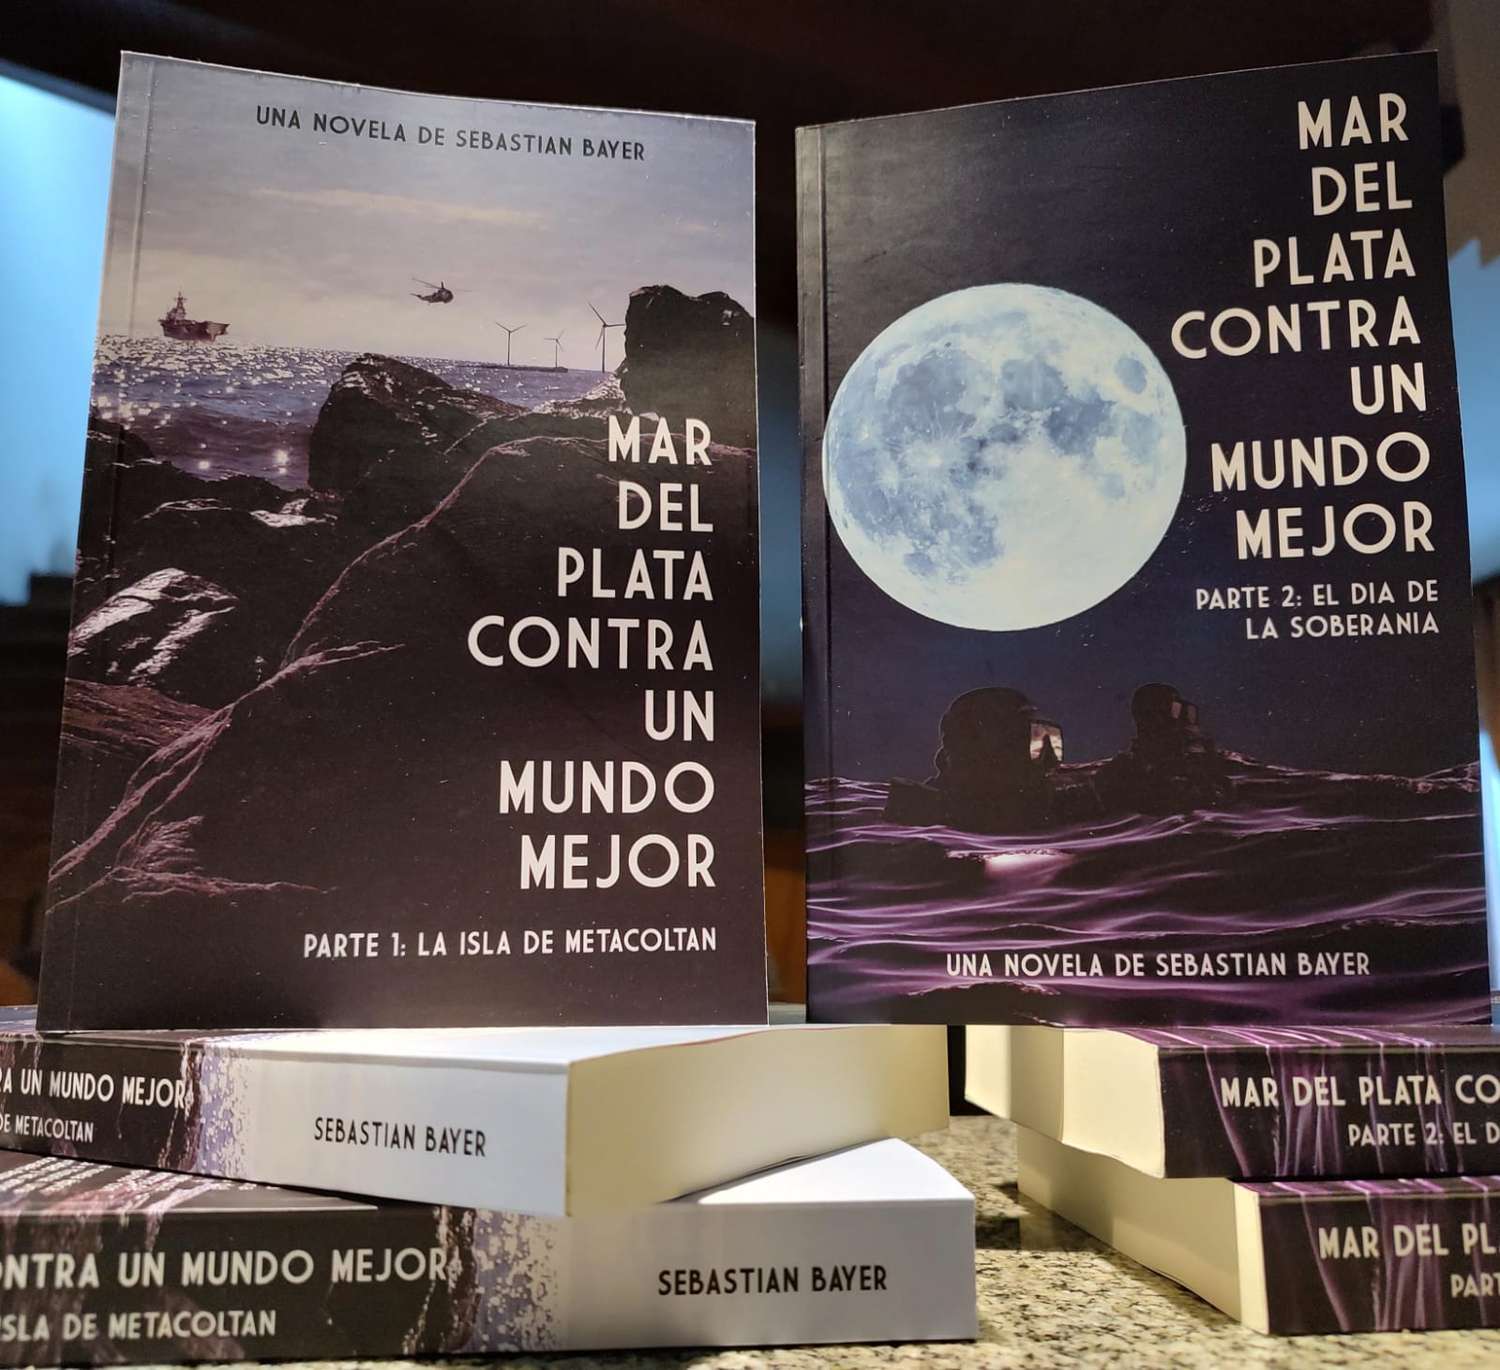 Mar del Plata contra un mundo mejor, una novela que "marca la cultura e identidad marplatense"